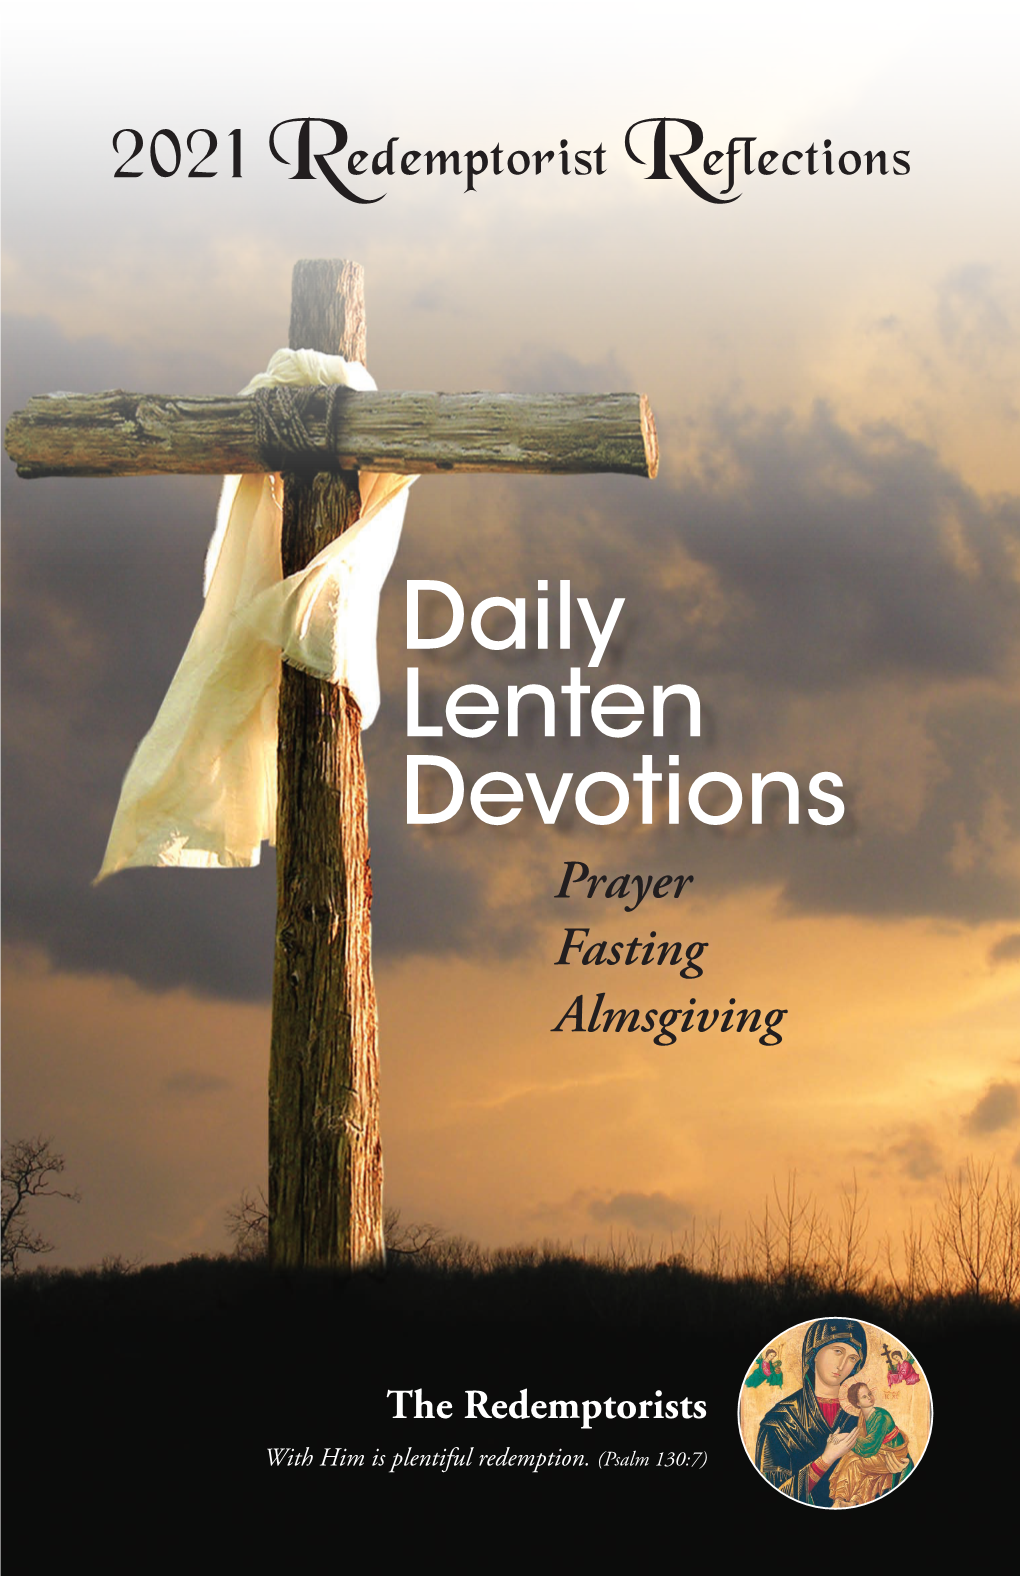 Daily Lenten Devotions Prayer Fasting Almsgiving